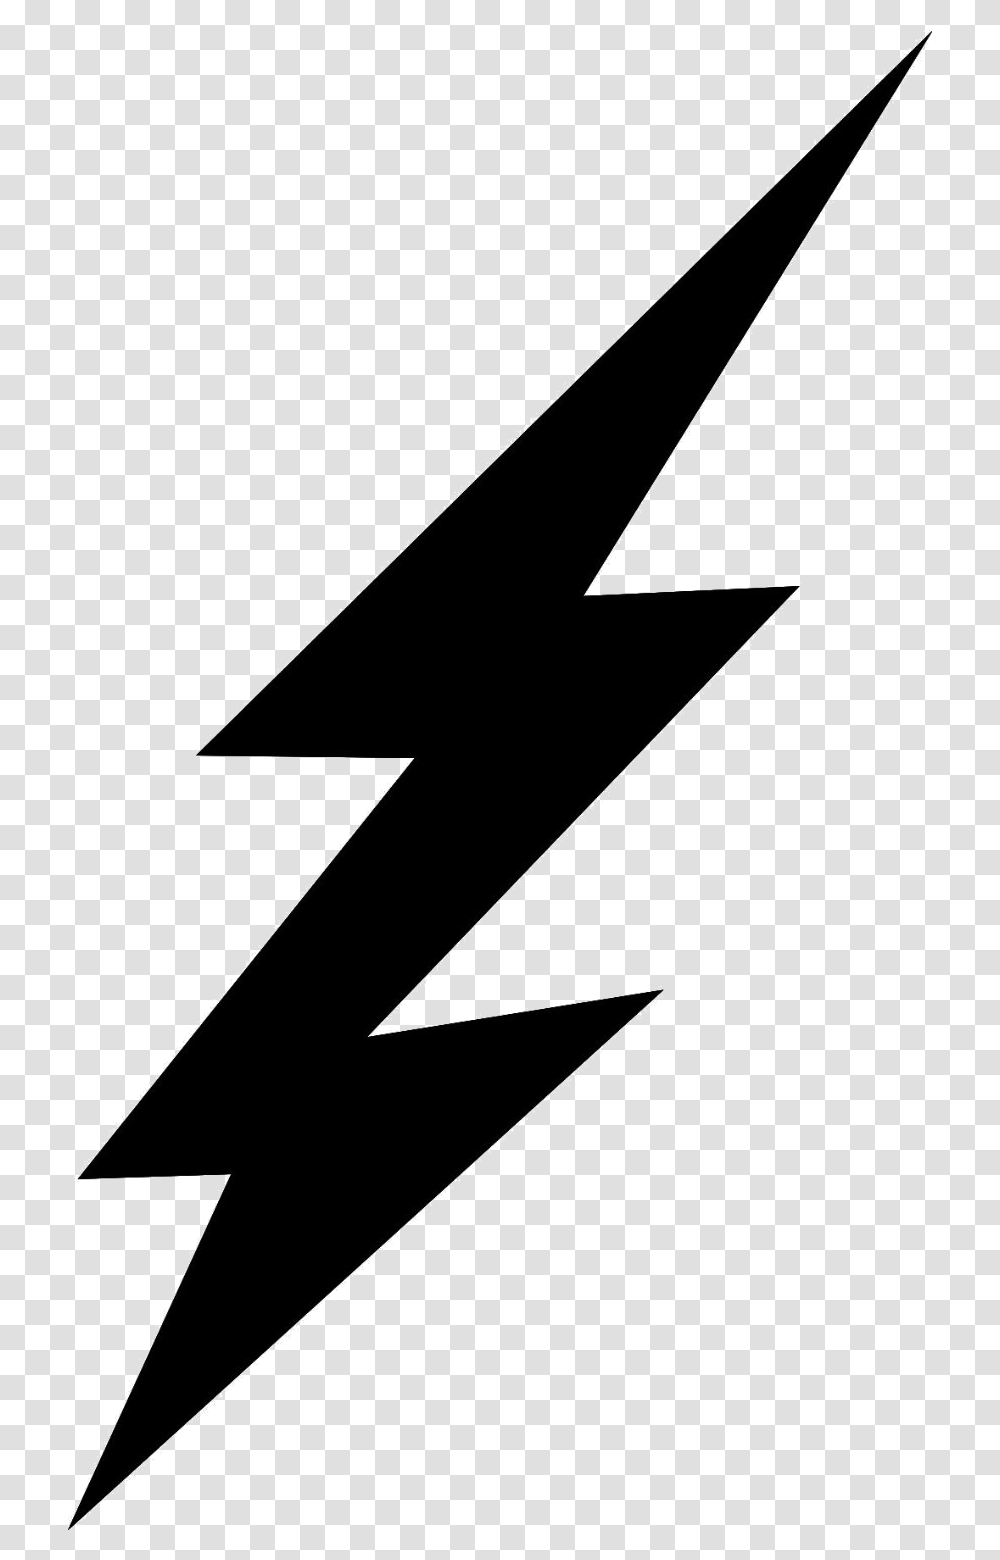 Lightning Free Bolt Clip Art On Lightning Bolt Clipart, Number, Triangle Transparent Png